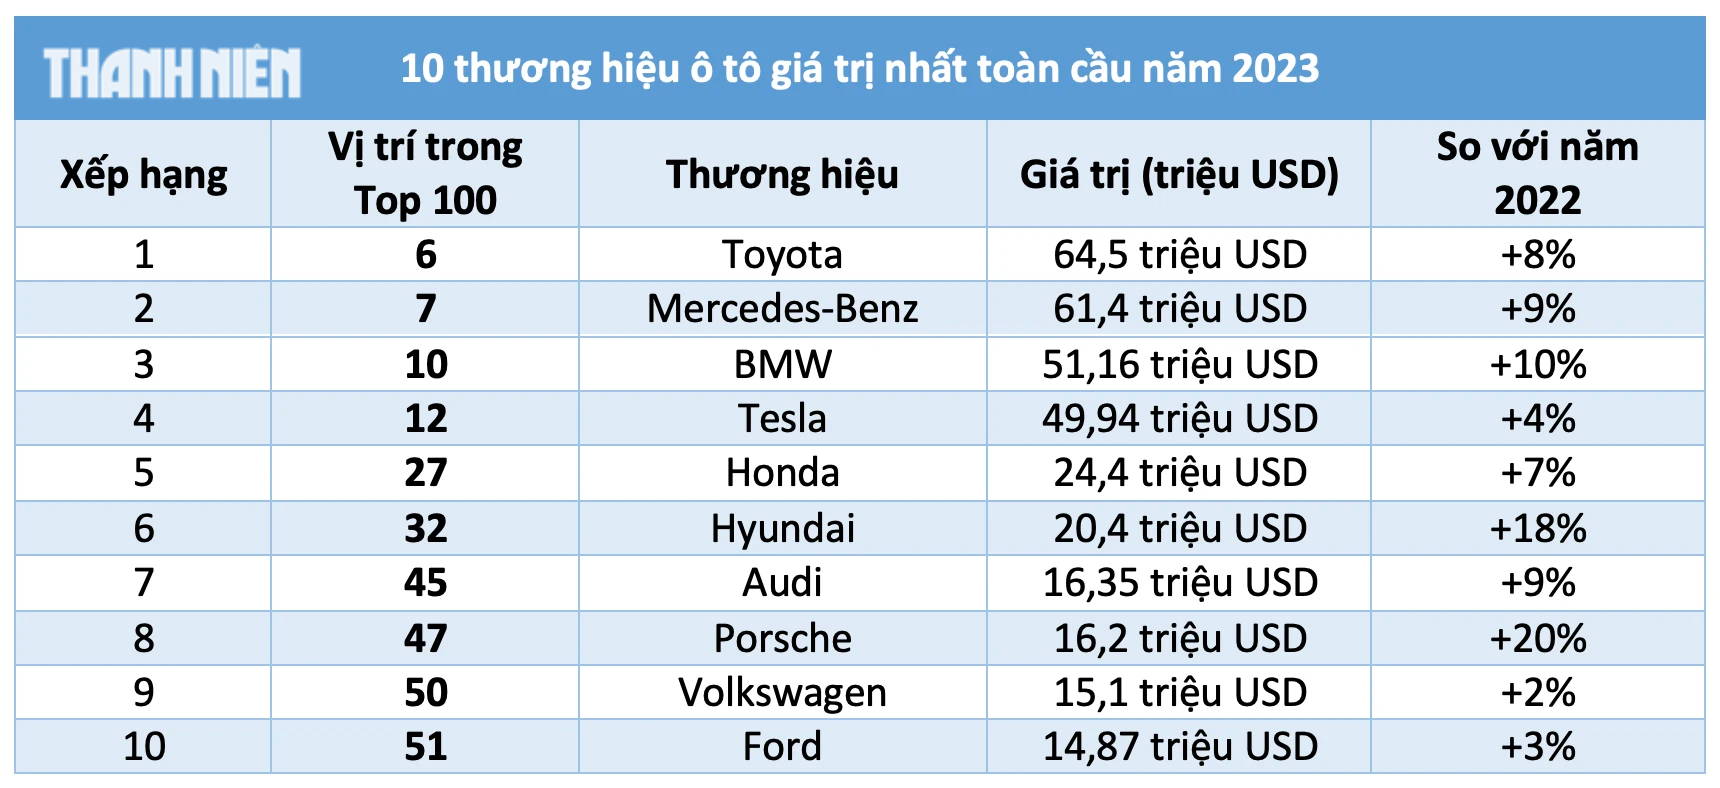 Vượt Mercedes, Toyota trở thành thương hiệu ô tô giá trị nhất toàn cầu năm 2023 - Ảnh 3.